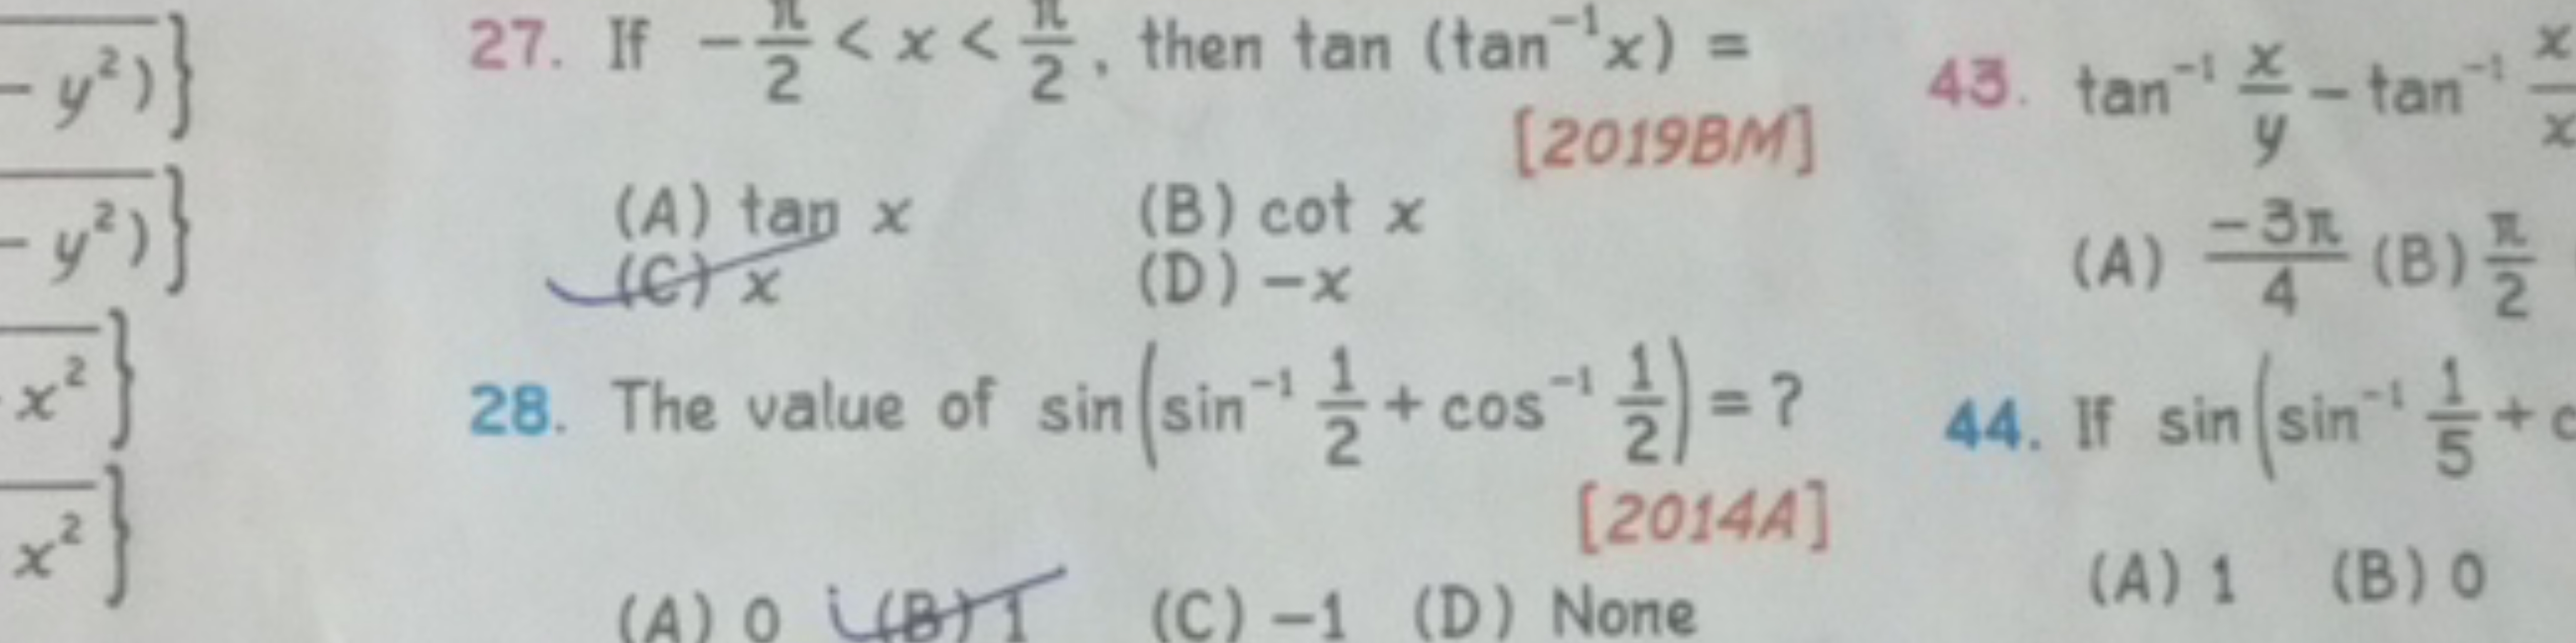 27. If −2π​<x<2π​, then tan(tan−1x)=
(A) tanx
[2019BM]
43. tan−1yx​−ta